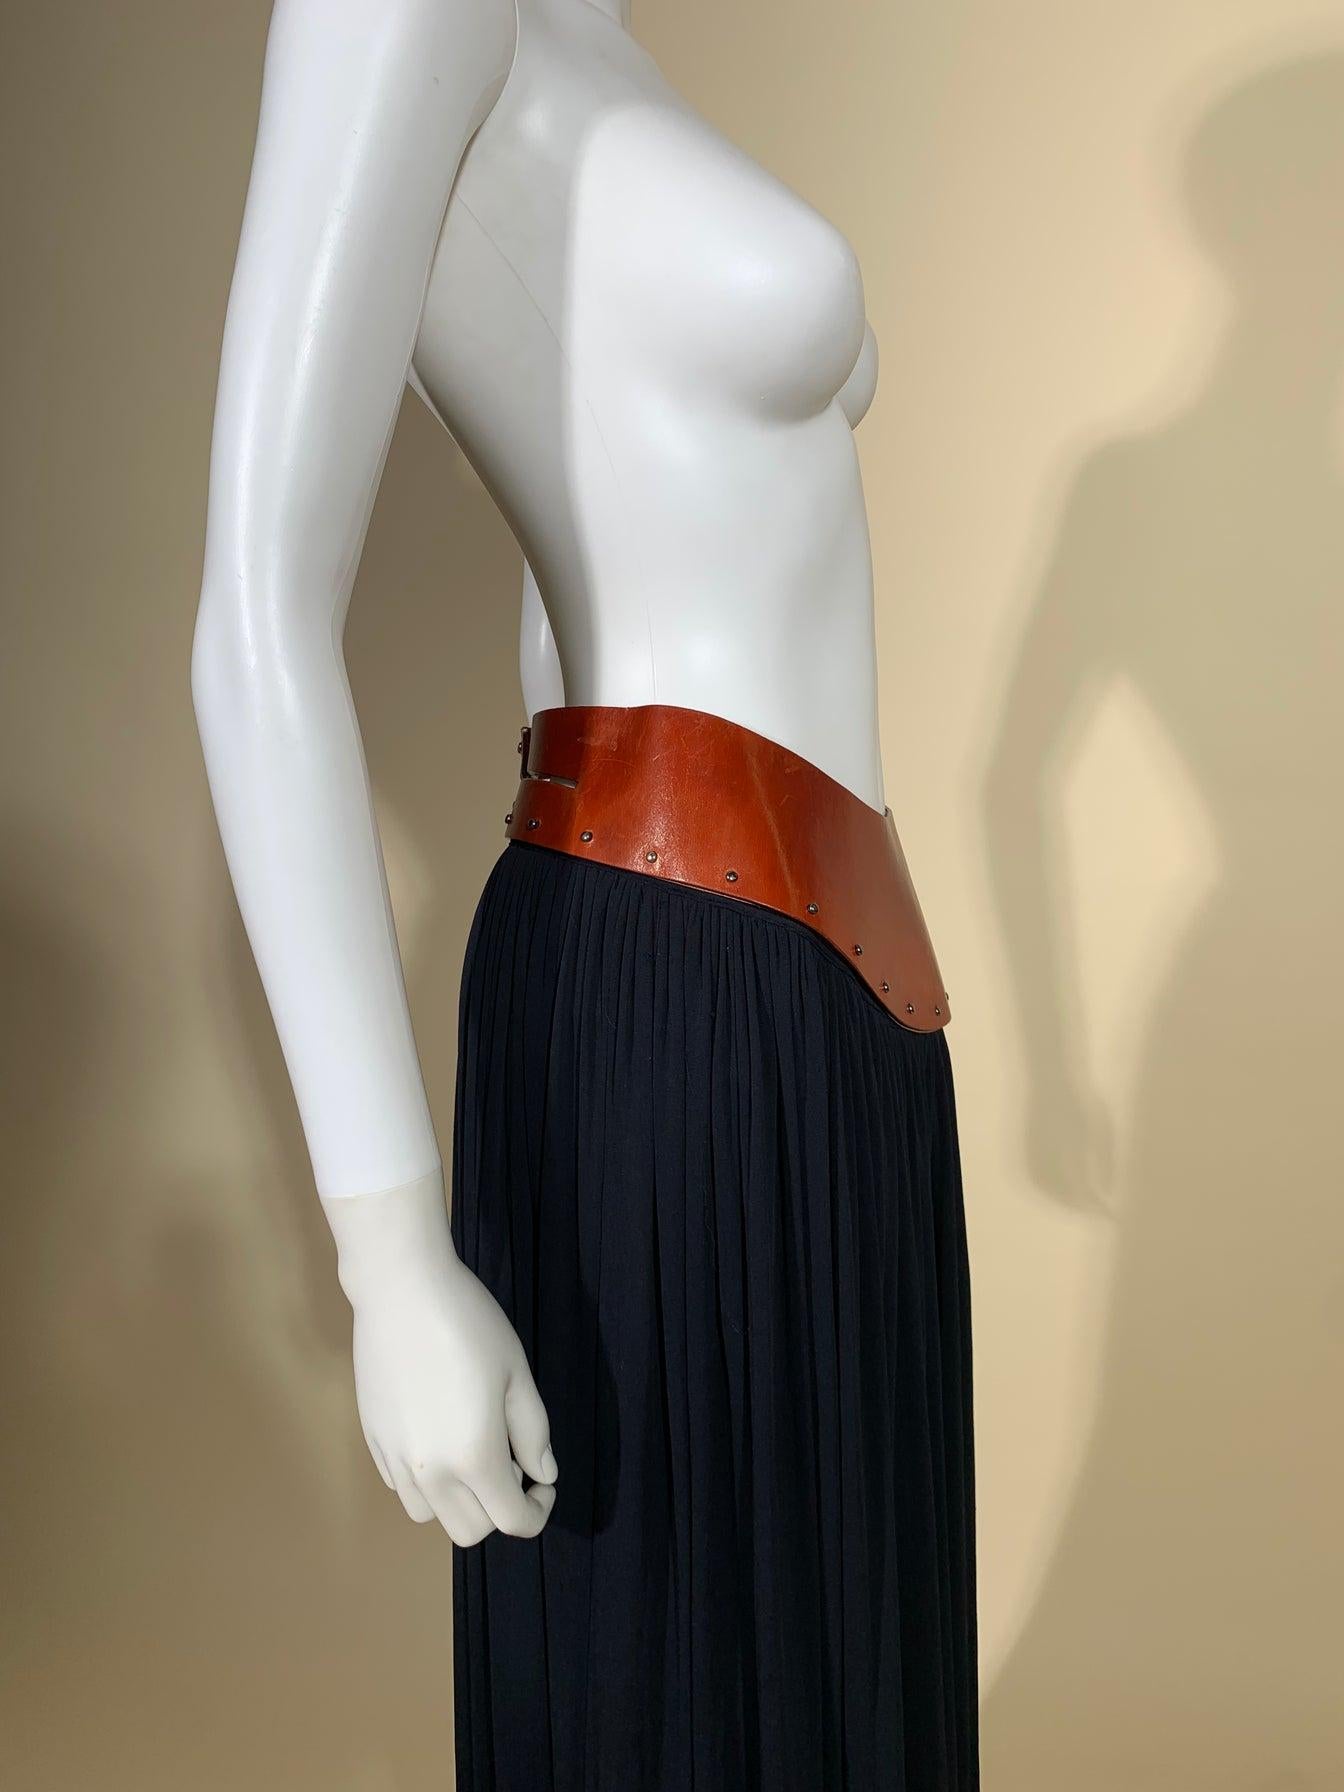 Jean-Paul Gaultier SS 2000 Femme Skirt 1